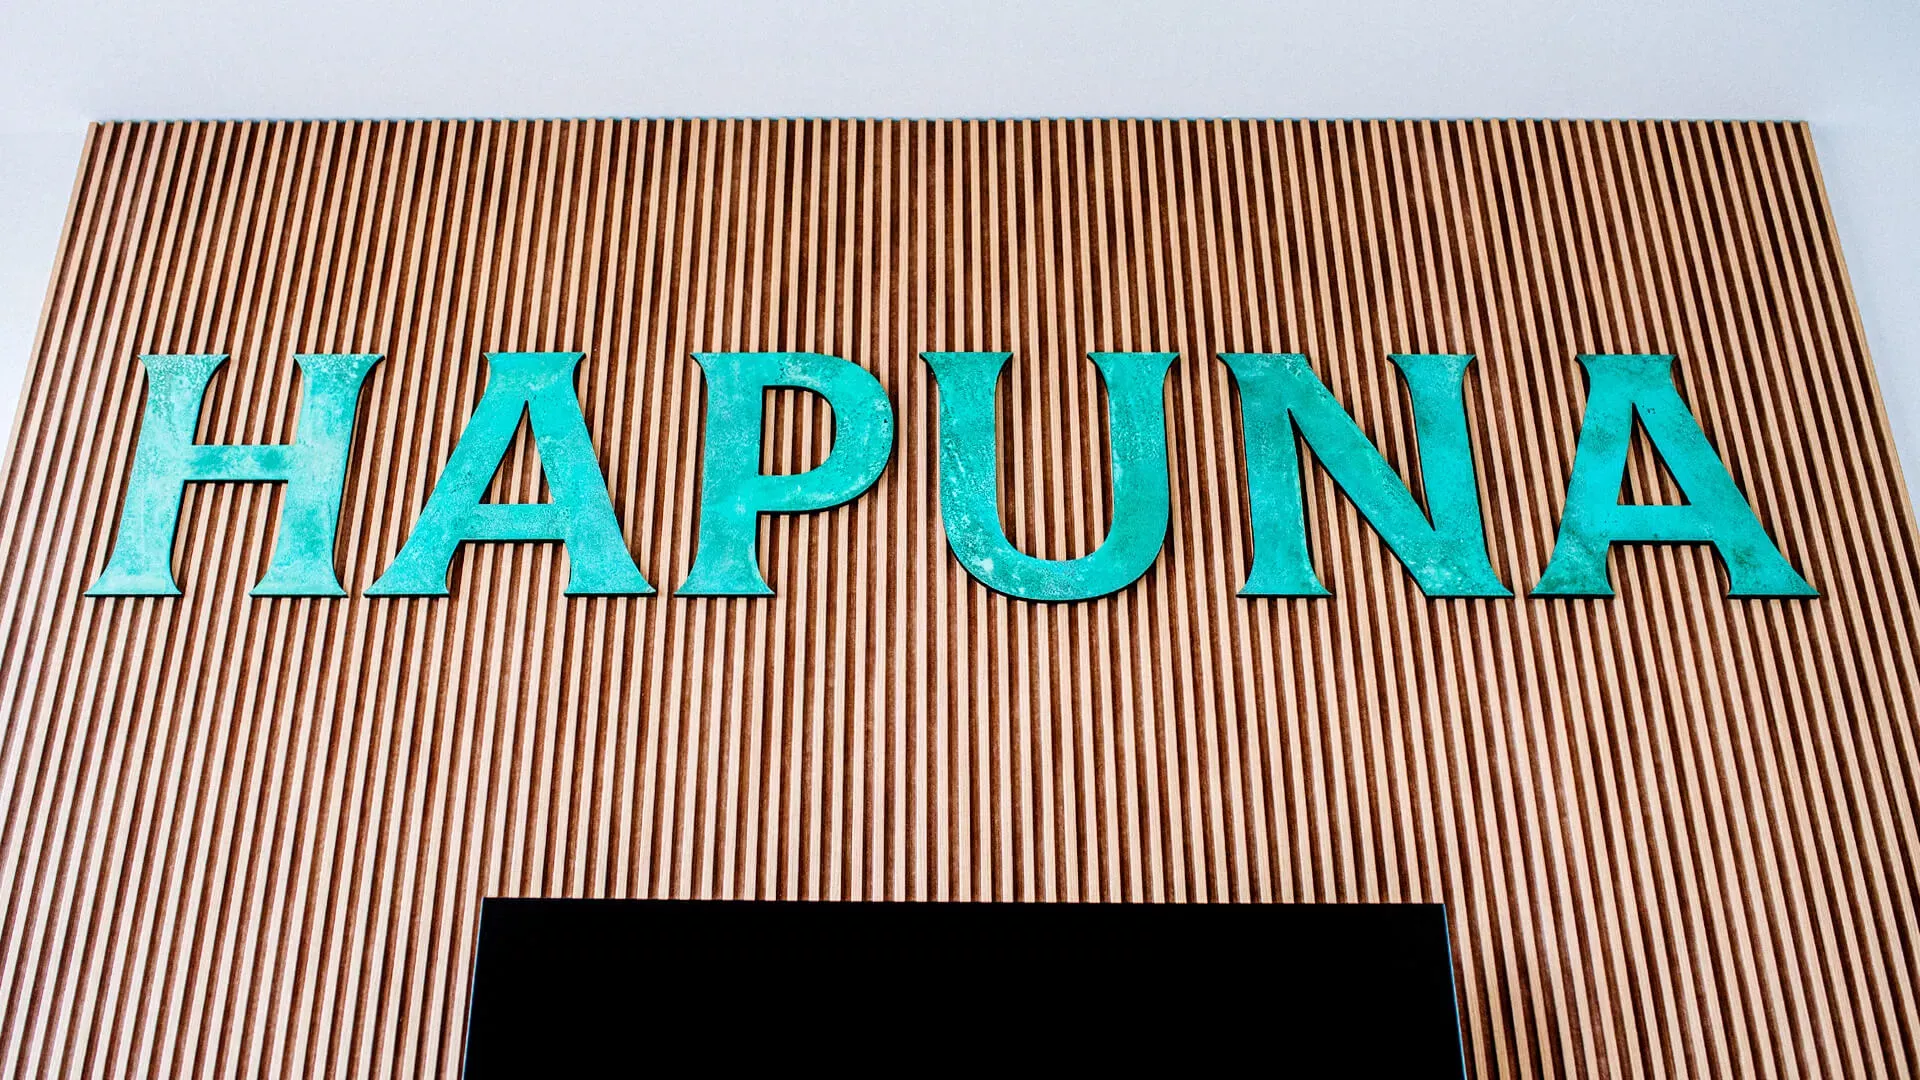 Hapuna - woord van metaal in industriële stijl bedekt met patina